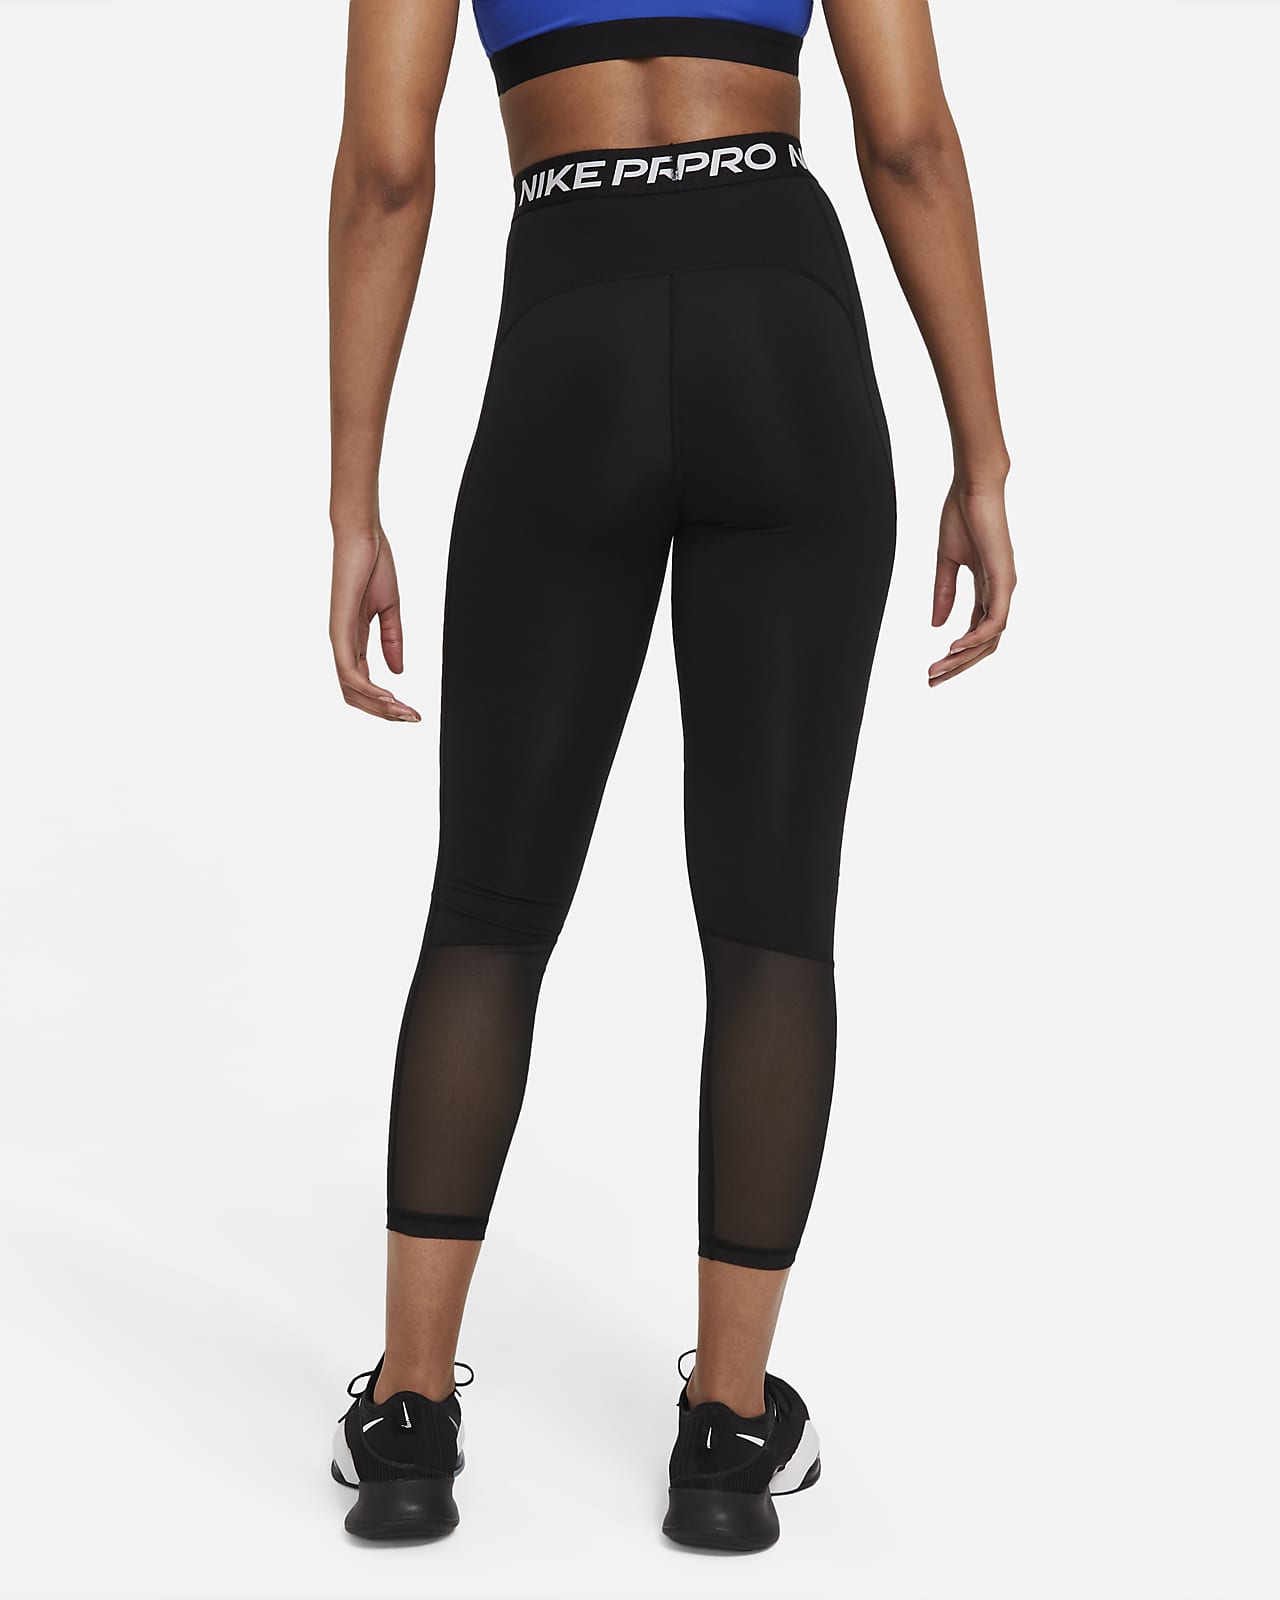 Nike leggings 1+1 😱😱😱 Material - Make Sense online shop